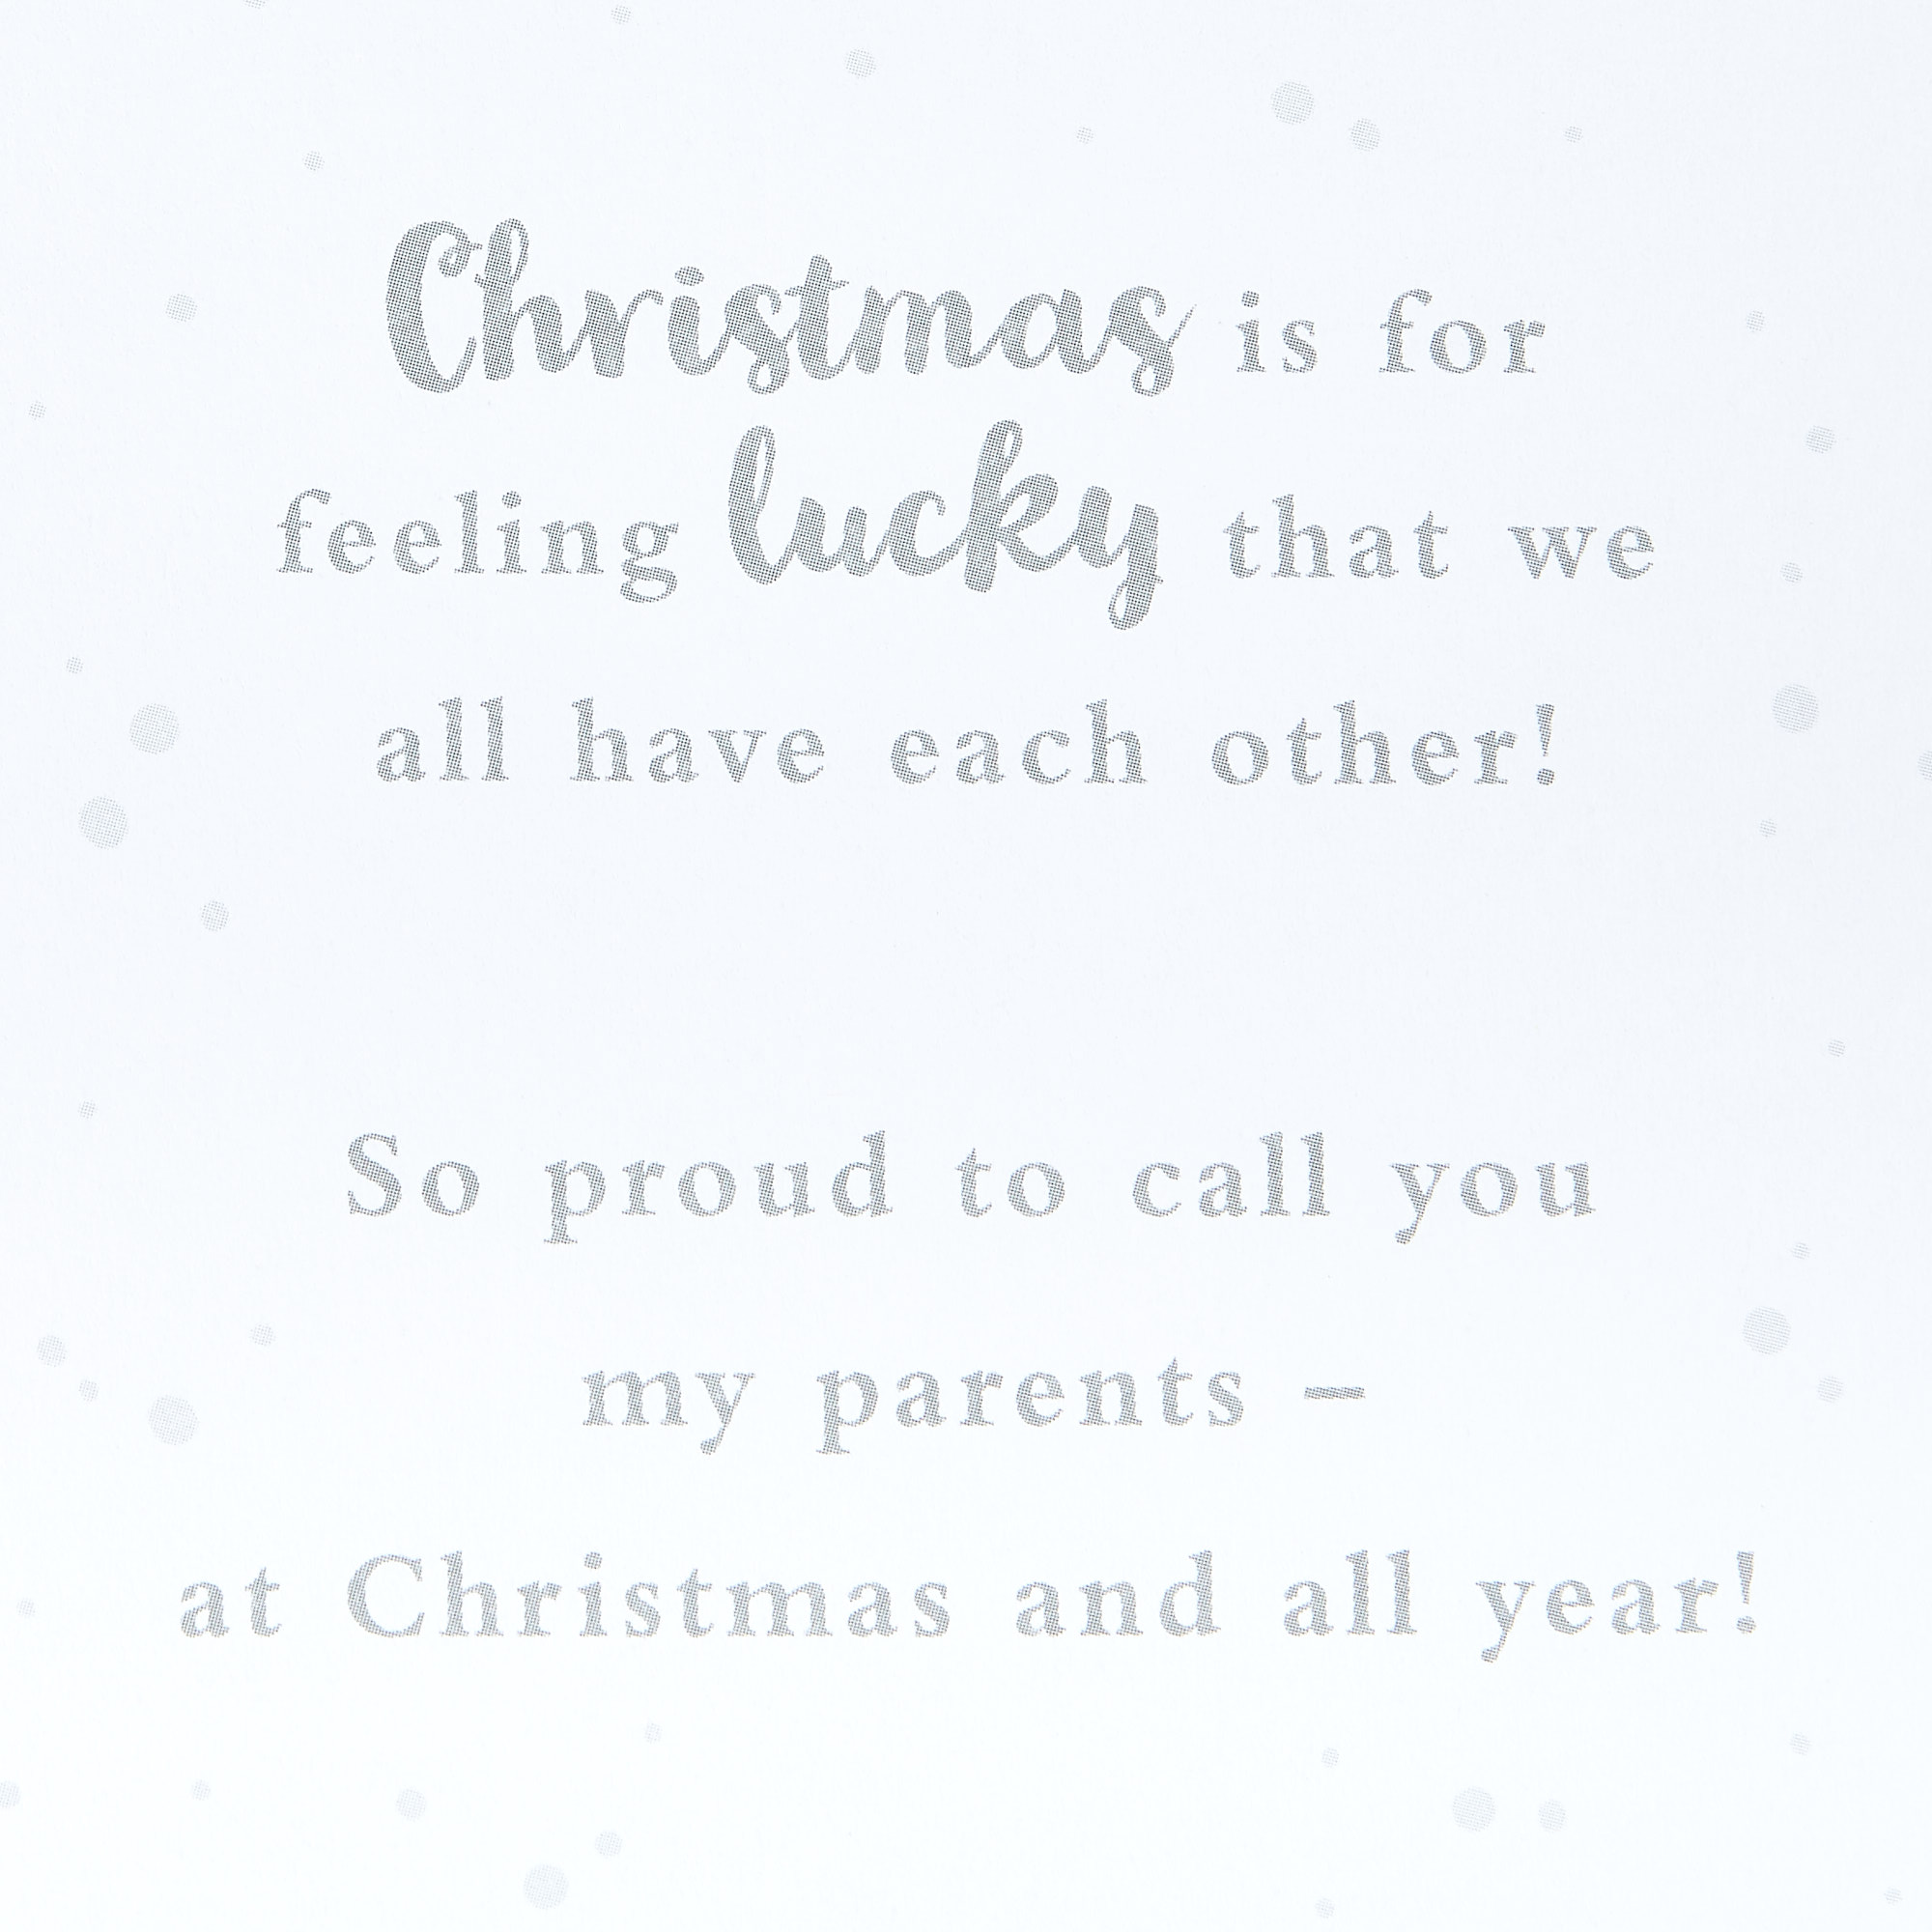 Christmas Card - Wonderful Mum & Dad Festive Wishes 